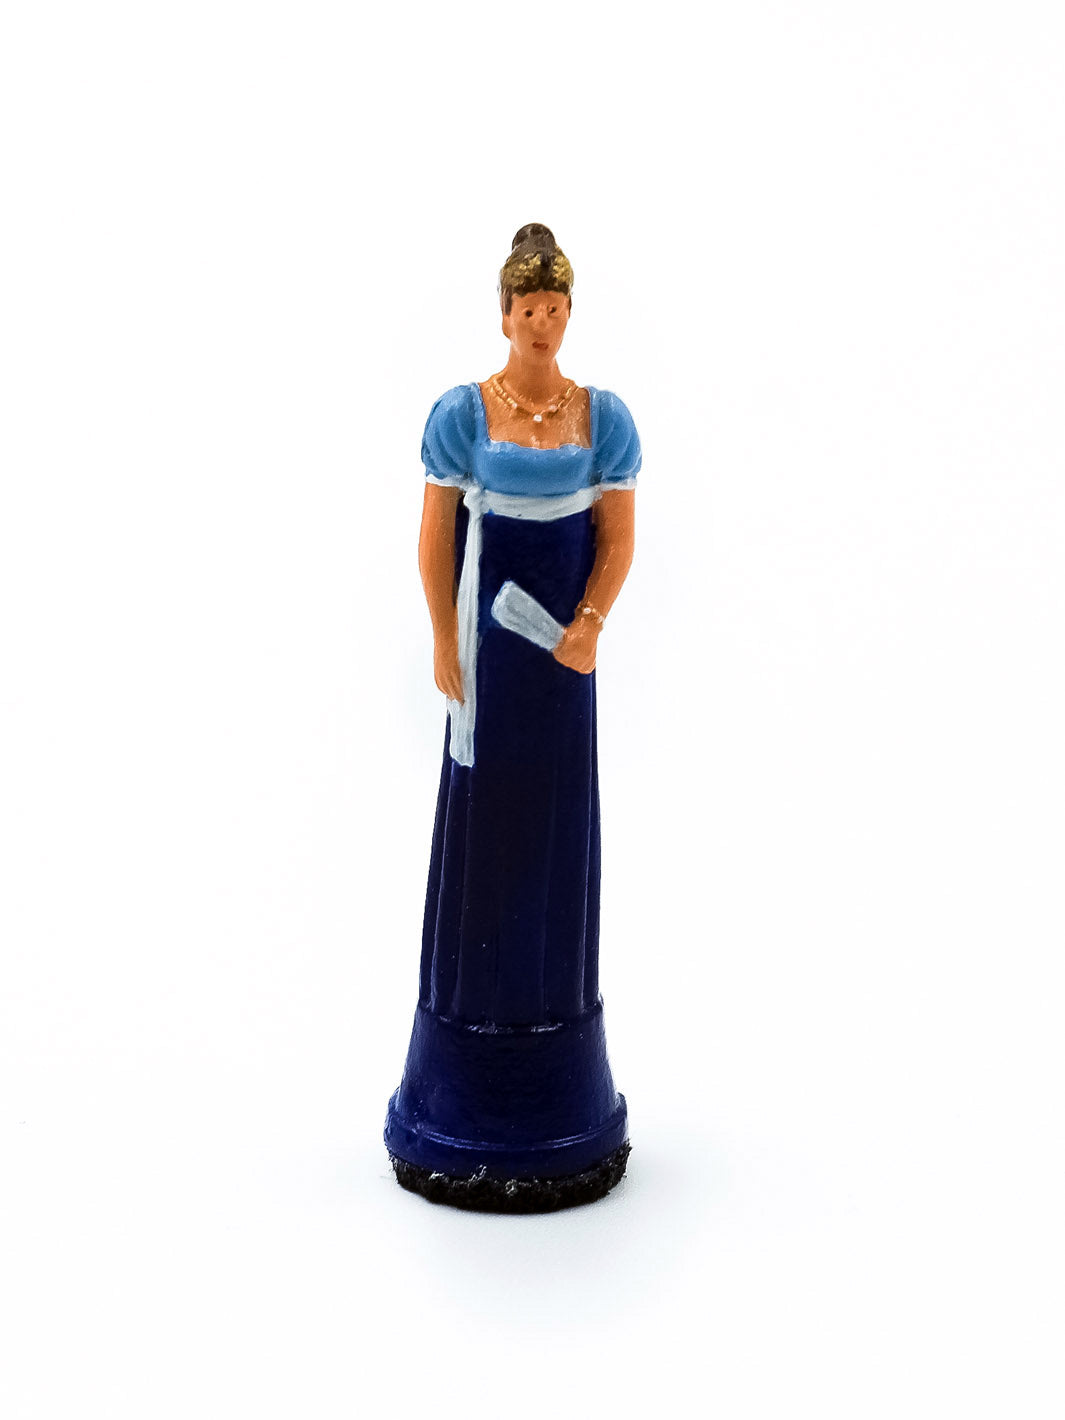 Piece Reine 1 portant une robe bleu et blanche vue de face